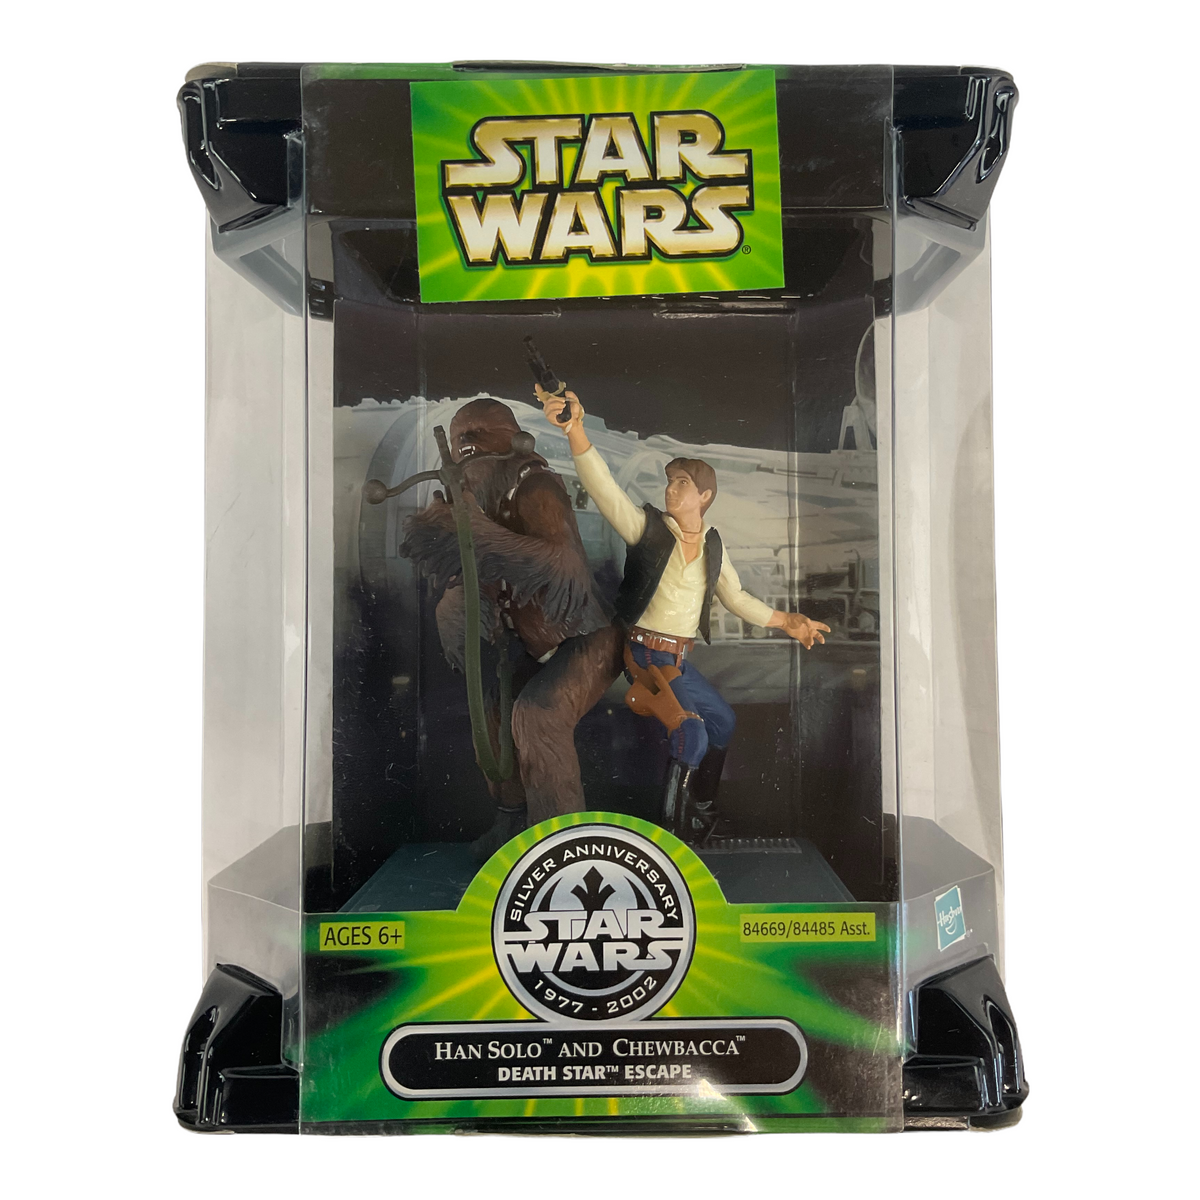 Star Wars 25th Anniversary Han Solo & Chewbacca Death Star Escape